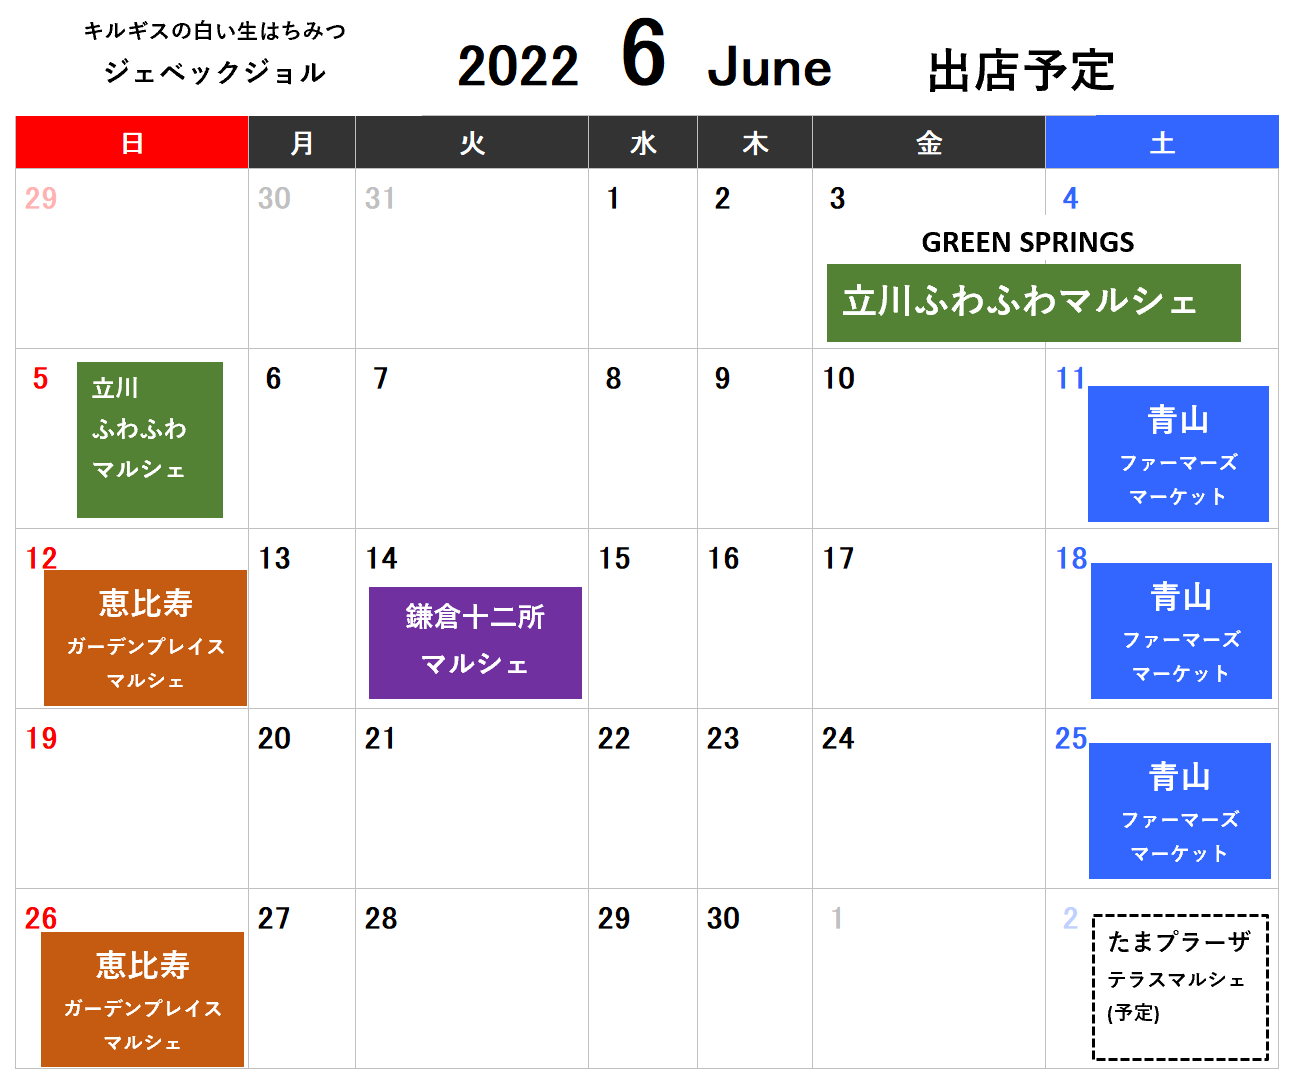 6月の出店は、立川、青山、恵比寿、鎌倉です。